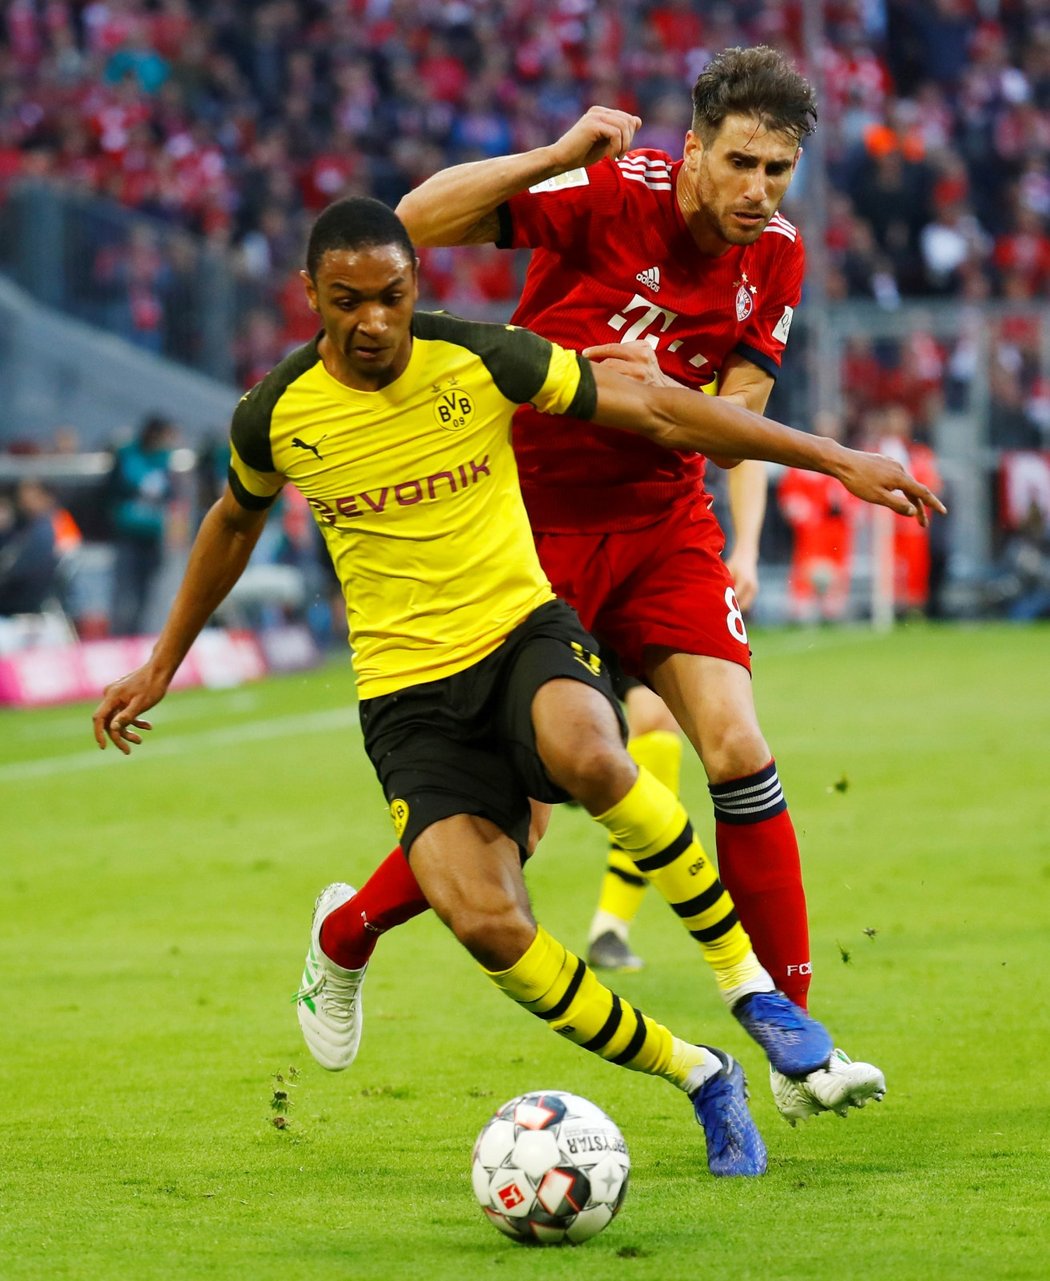 Bek Dortmundu Abdou Diallo si kryje míč před Javi Martínezem z Bayernu Mnichov